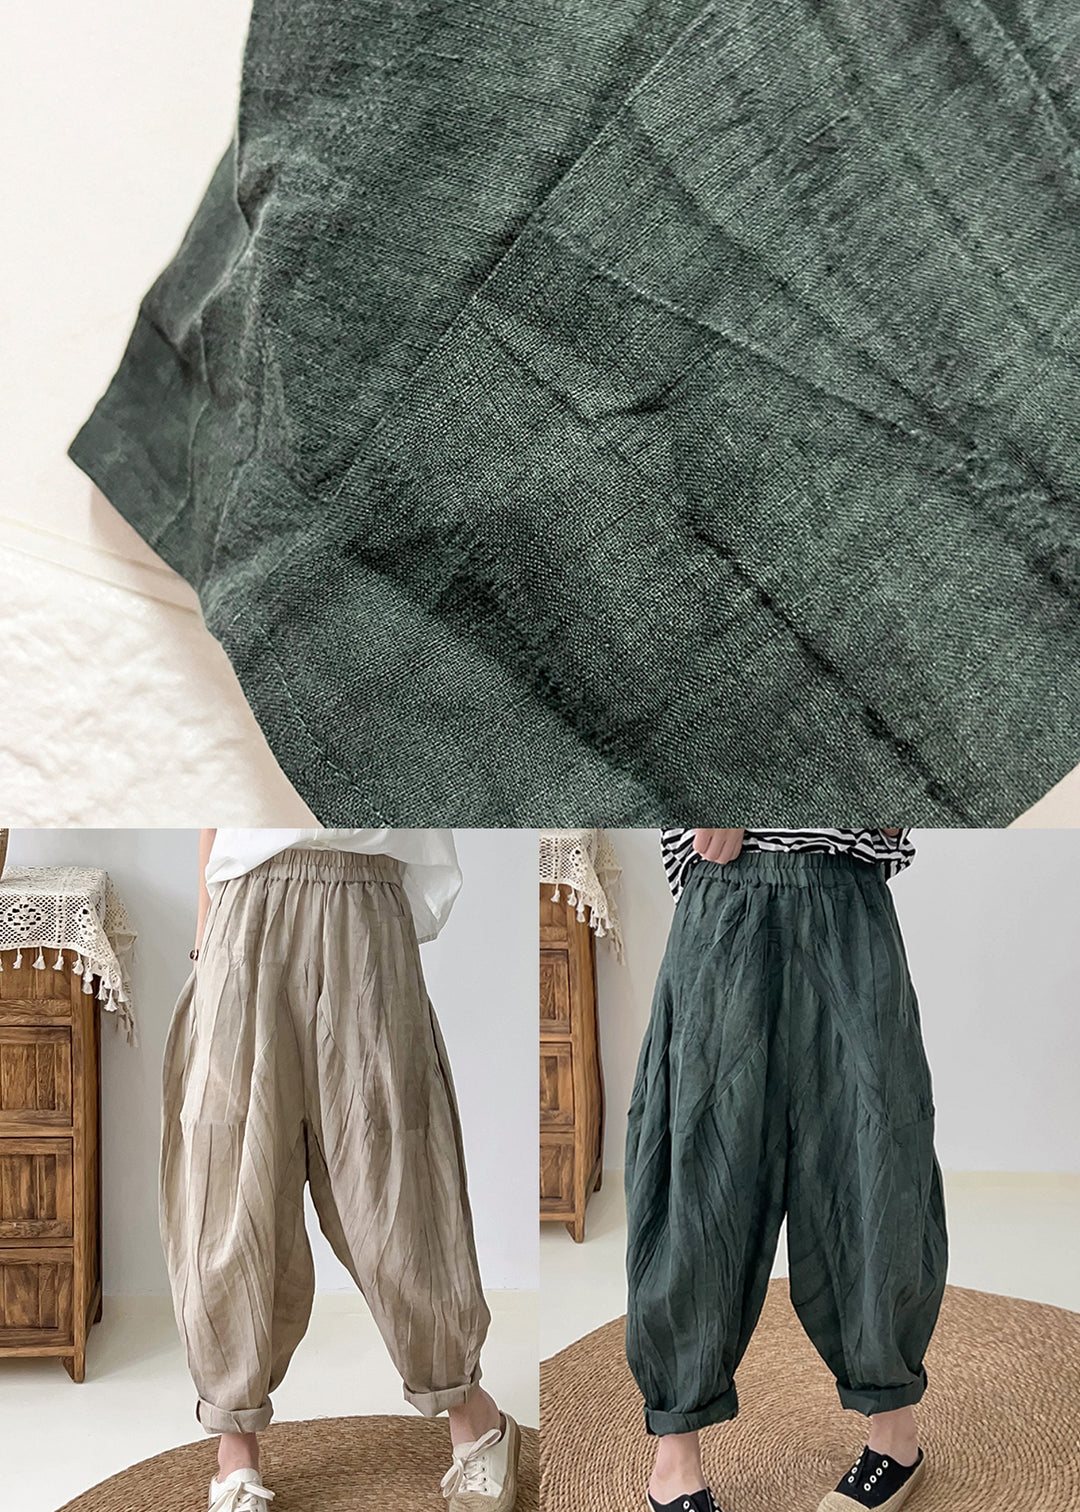 Khaki Tie Dye Linen Harem Pants Oversized Wrinkled Fall